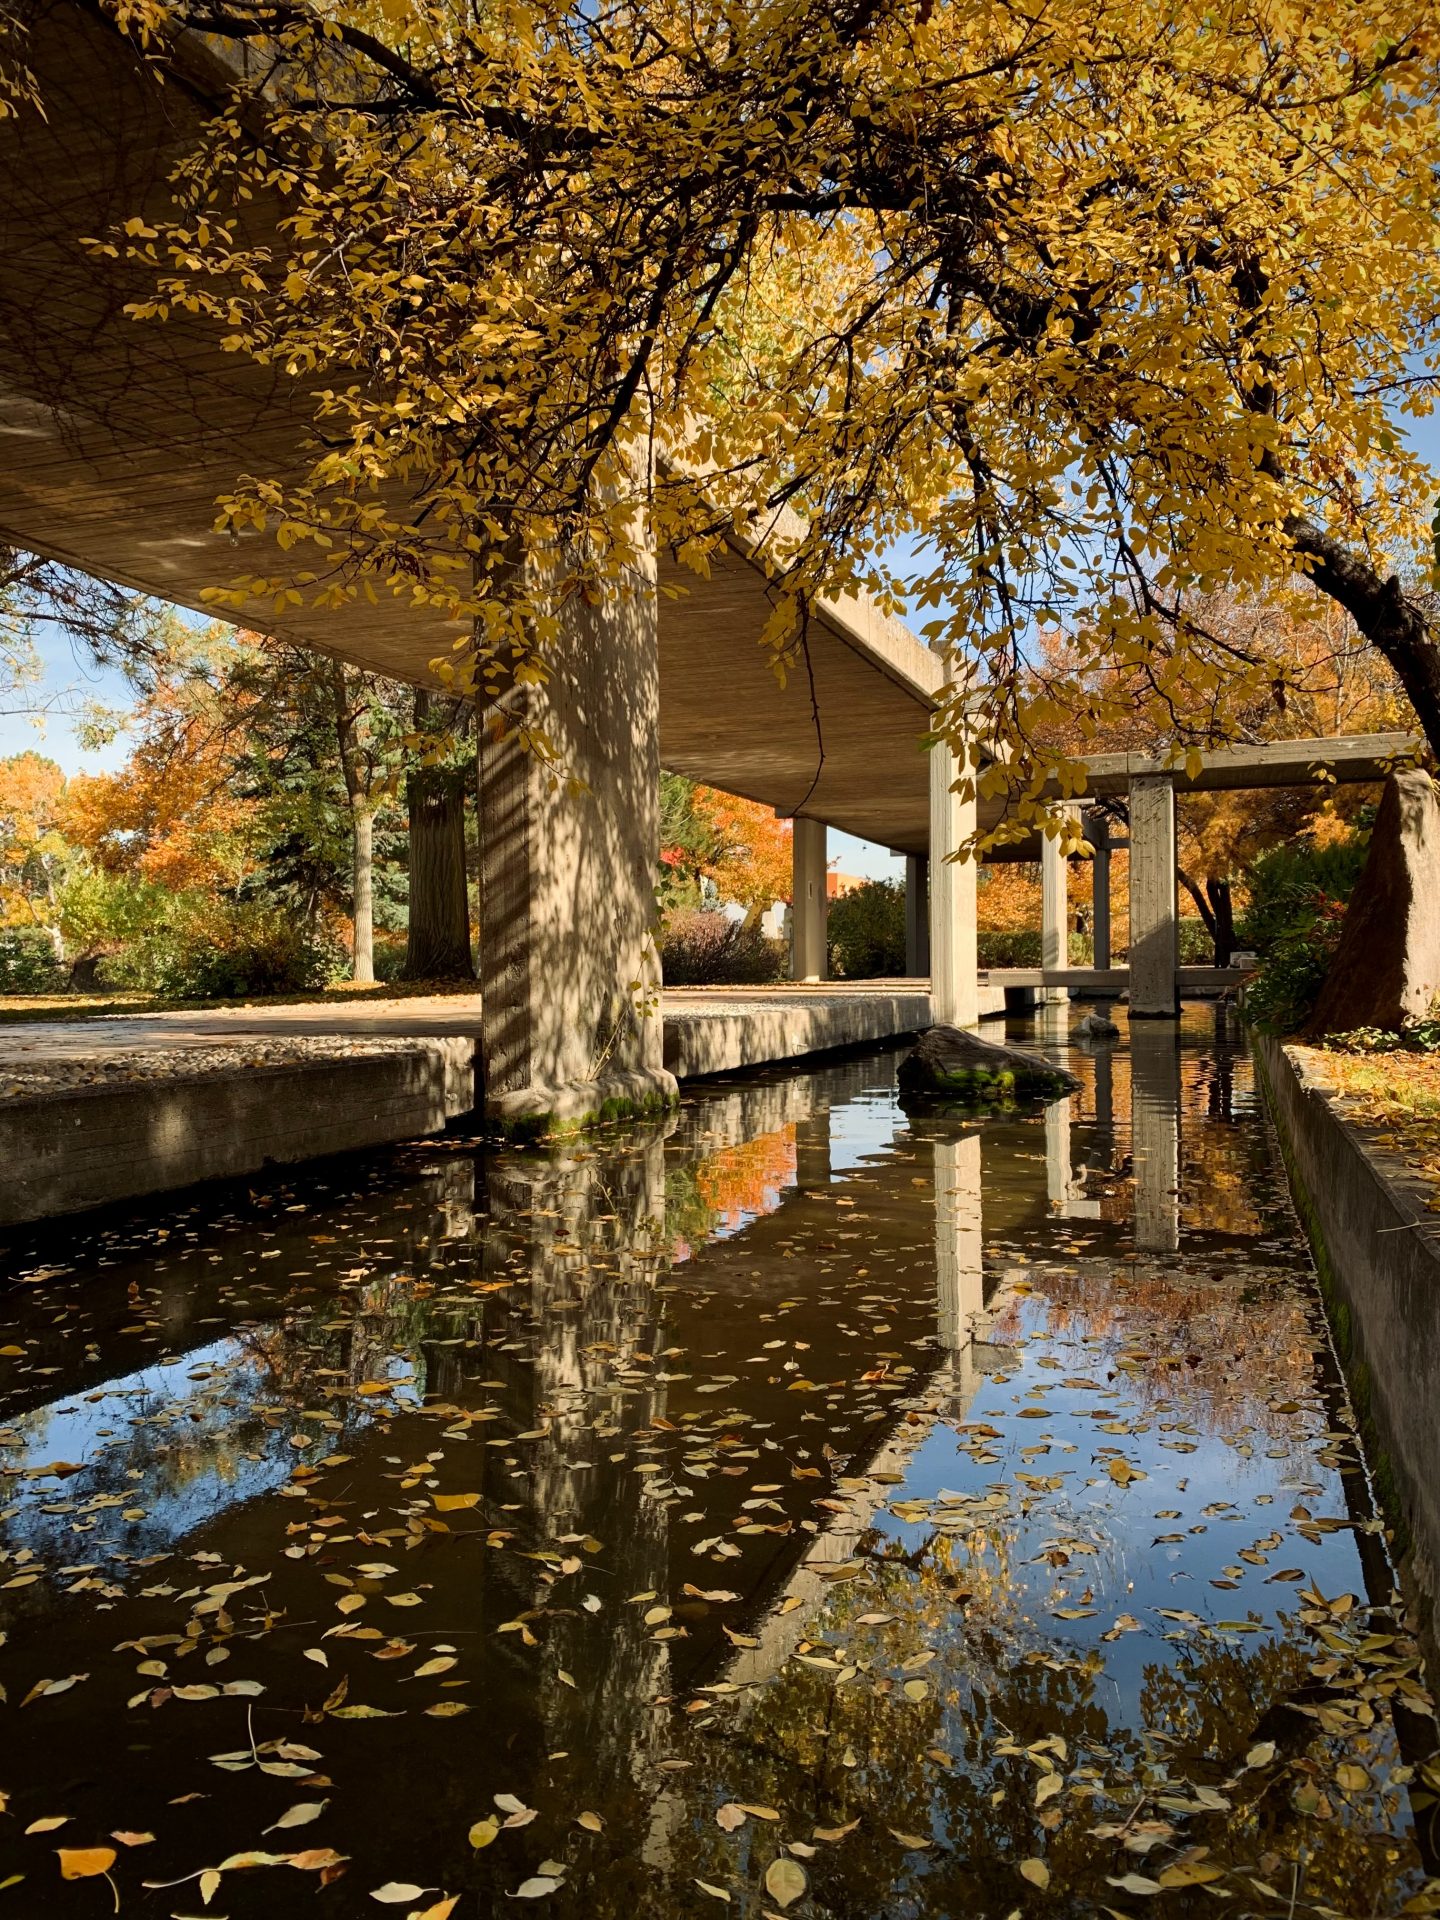 Autumn garden with an artificial urban lake